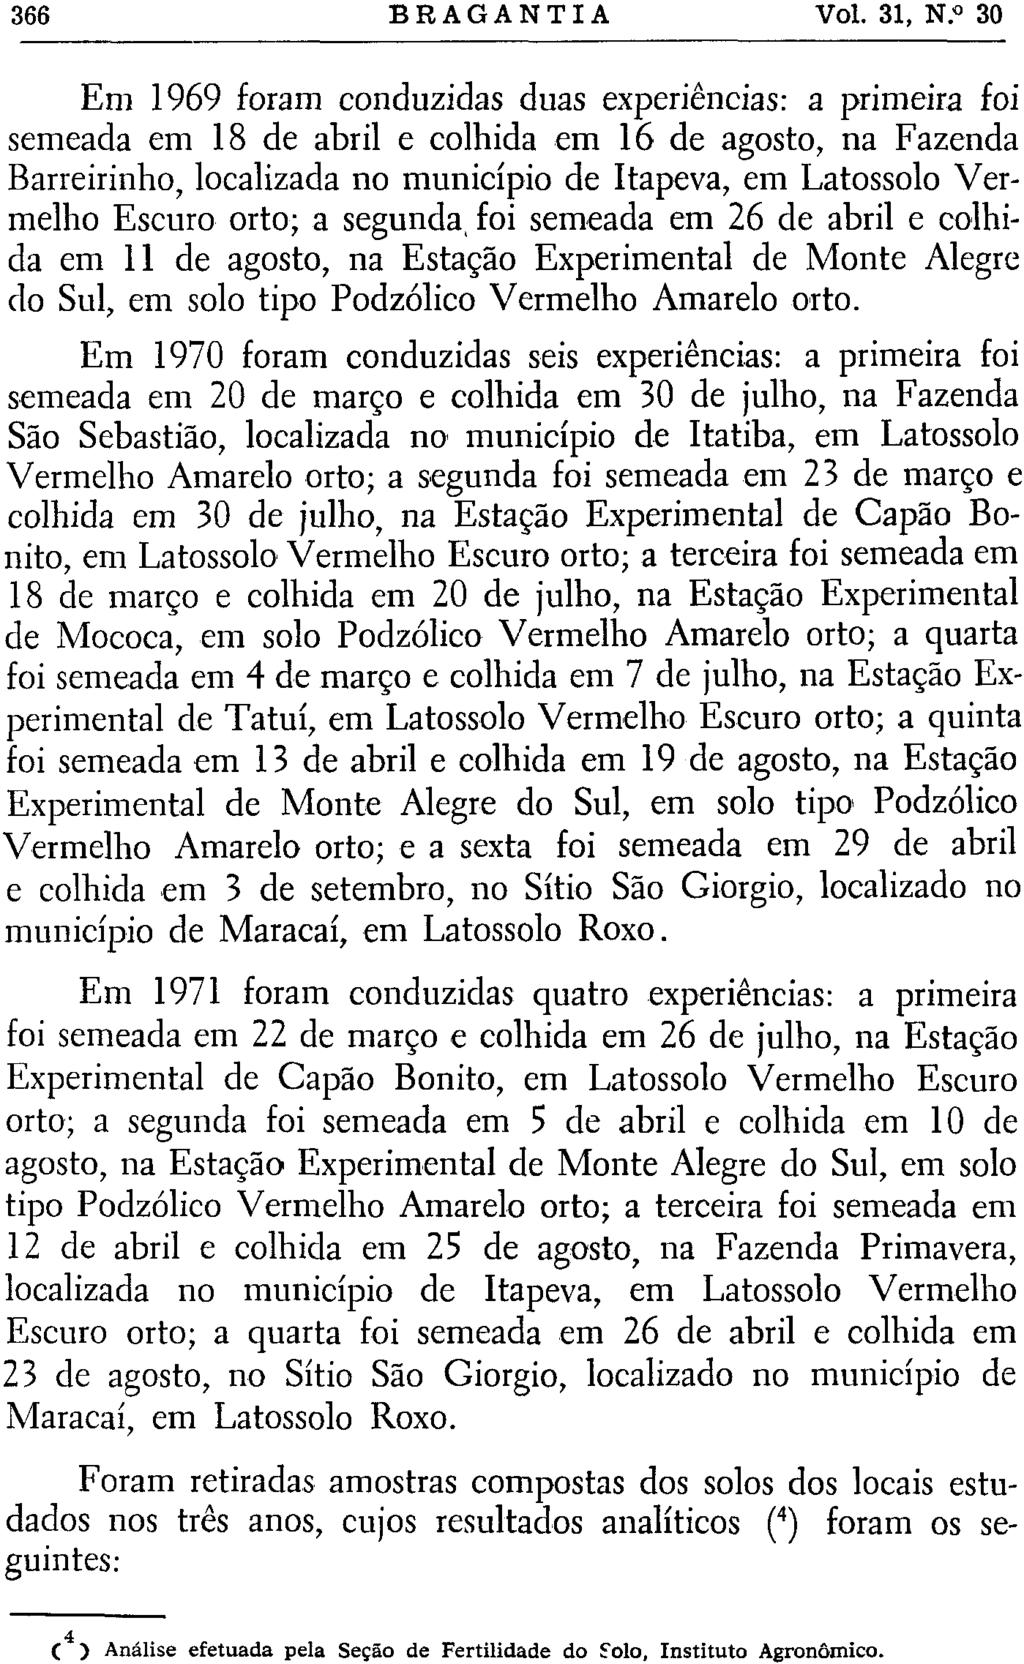 Em 1969 foram conduzidas duas experiências: a primeira foi semeada em 18 de abril e colhida em 16 de agosto, na Fazenda Barreirinho, localizada no município de Itapeva, em Latossolo Vermelho Escuro